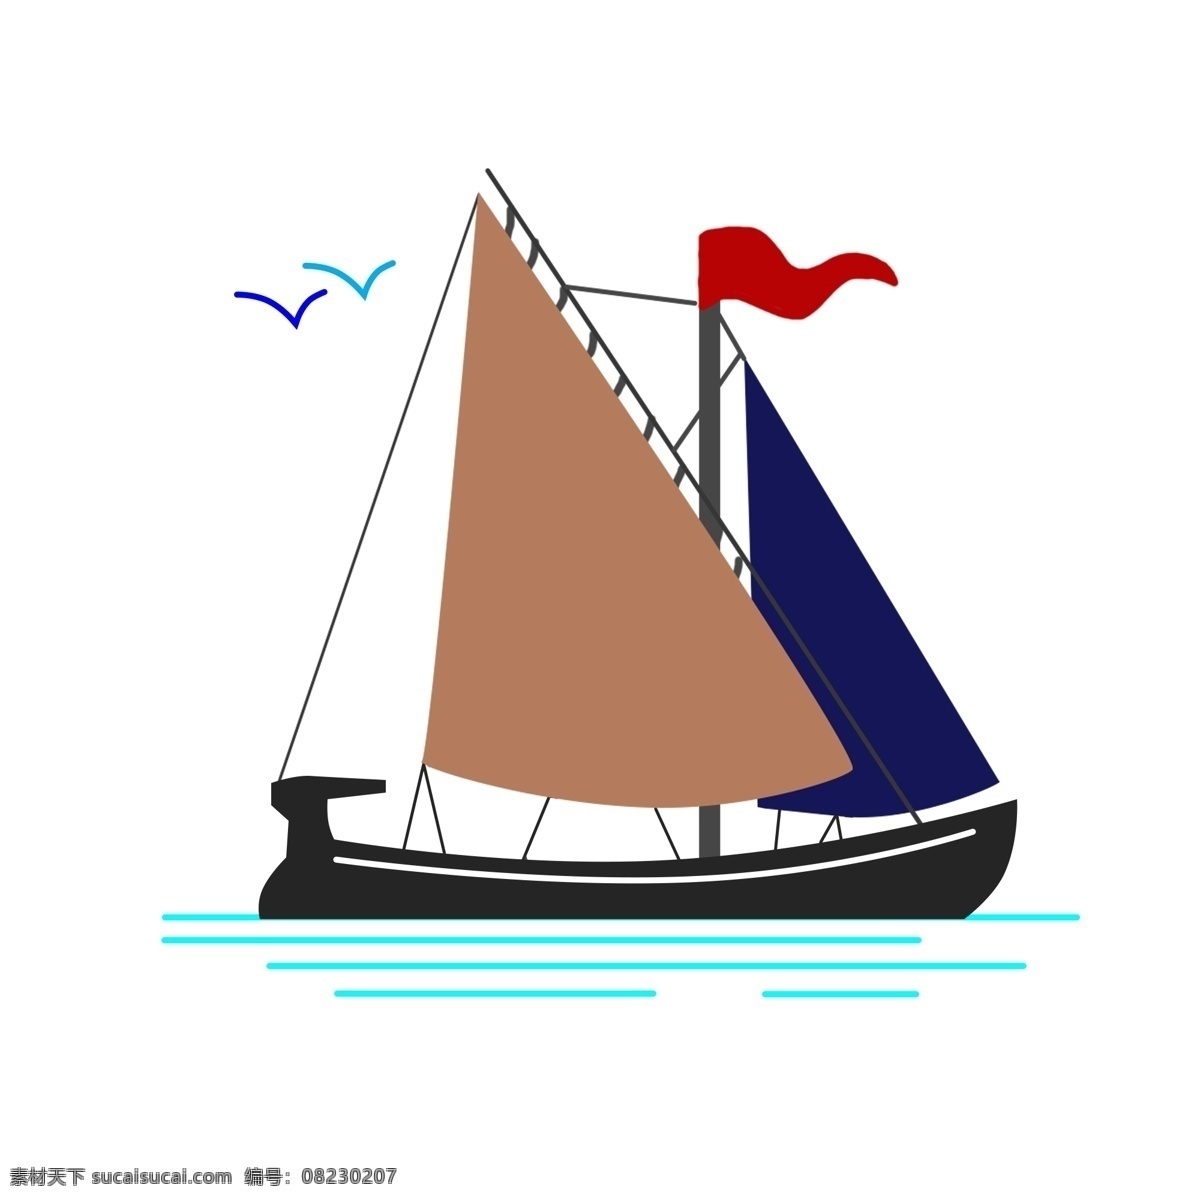 蓝色 帆船 手绘 插画 蓝色的帆船 红色的旗帜 蓝色的燕子 飞行的燕子 蓝色的海浪 交通工具 运输